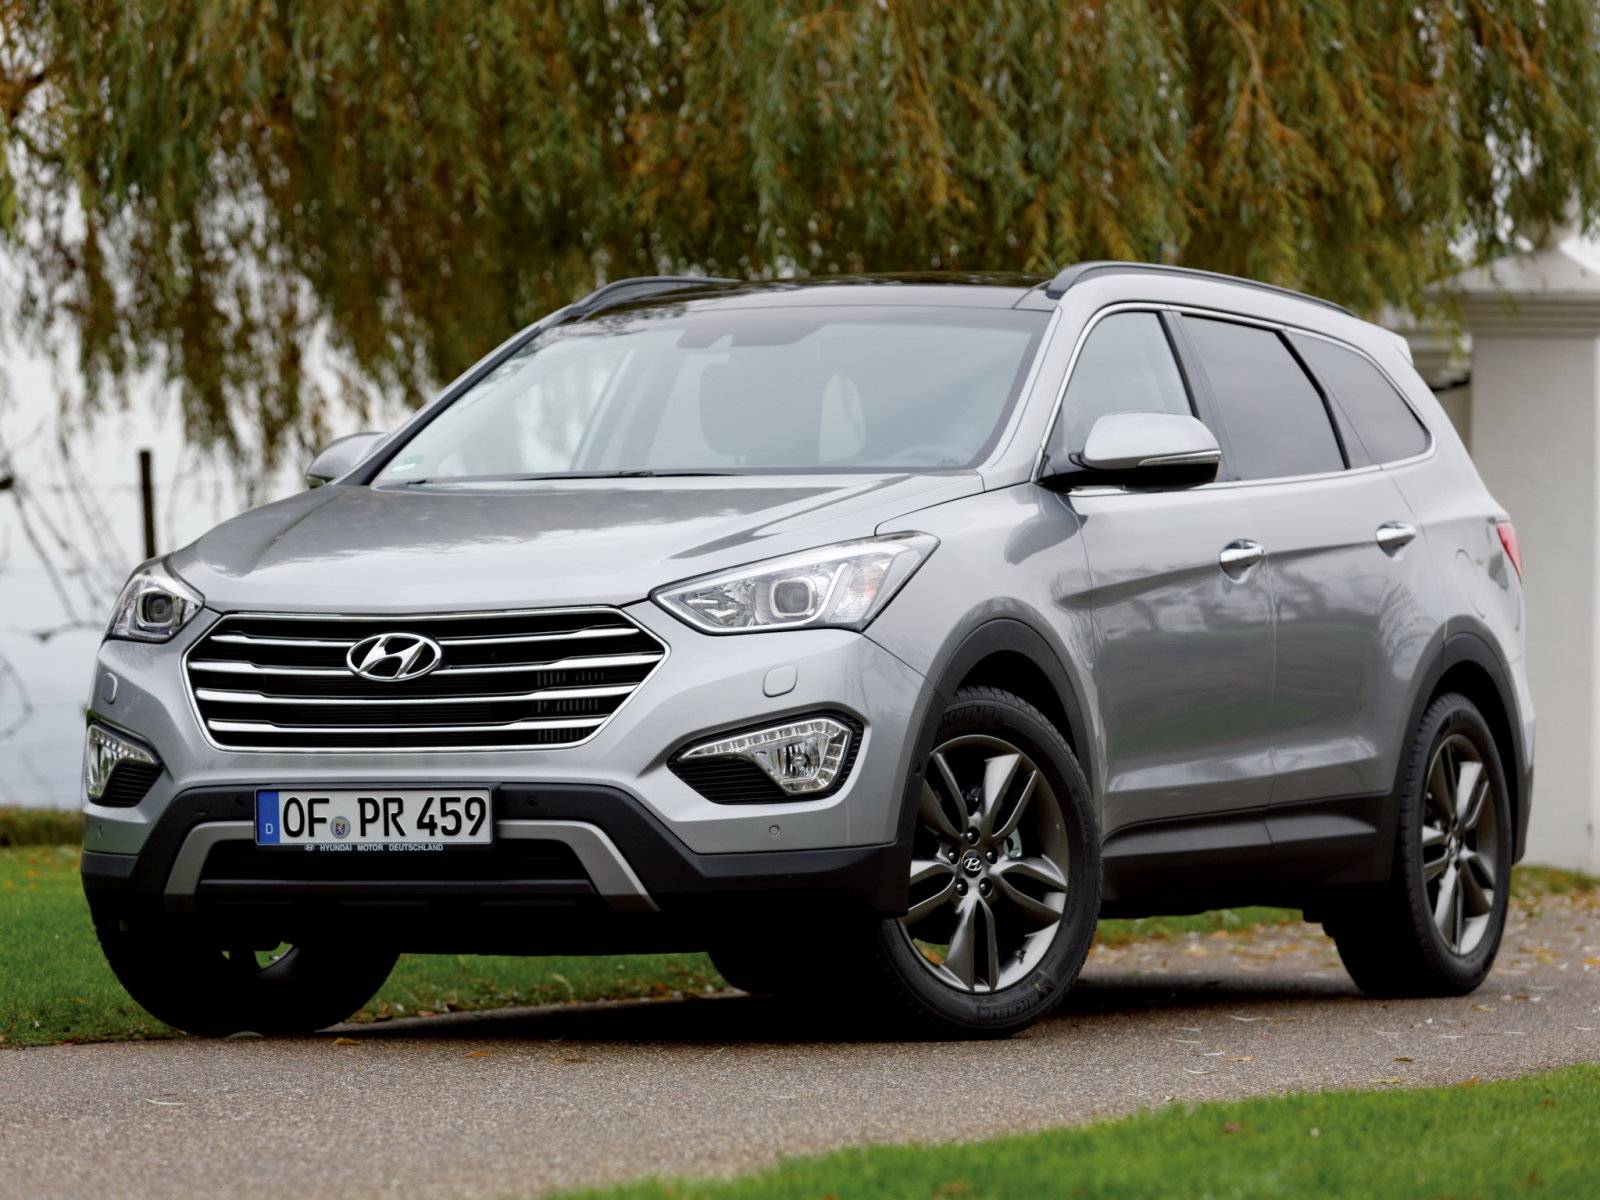 Hyundai grand santa fe — рестайлинг 3 поколения на российском рынке